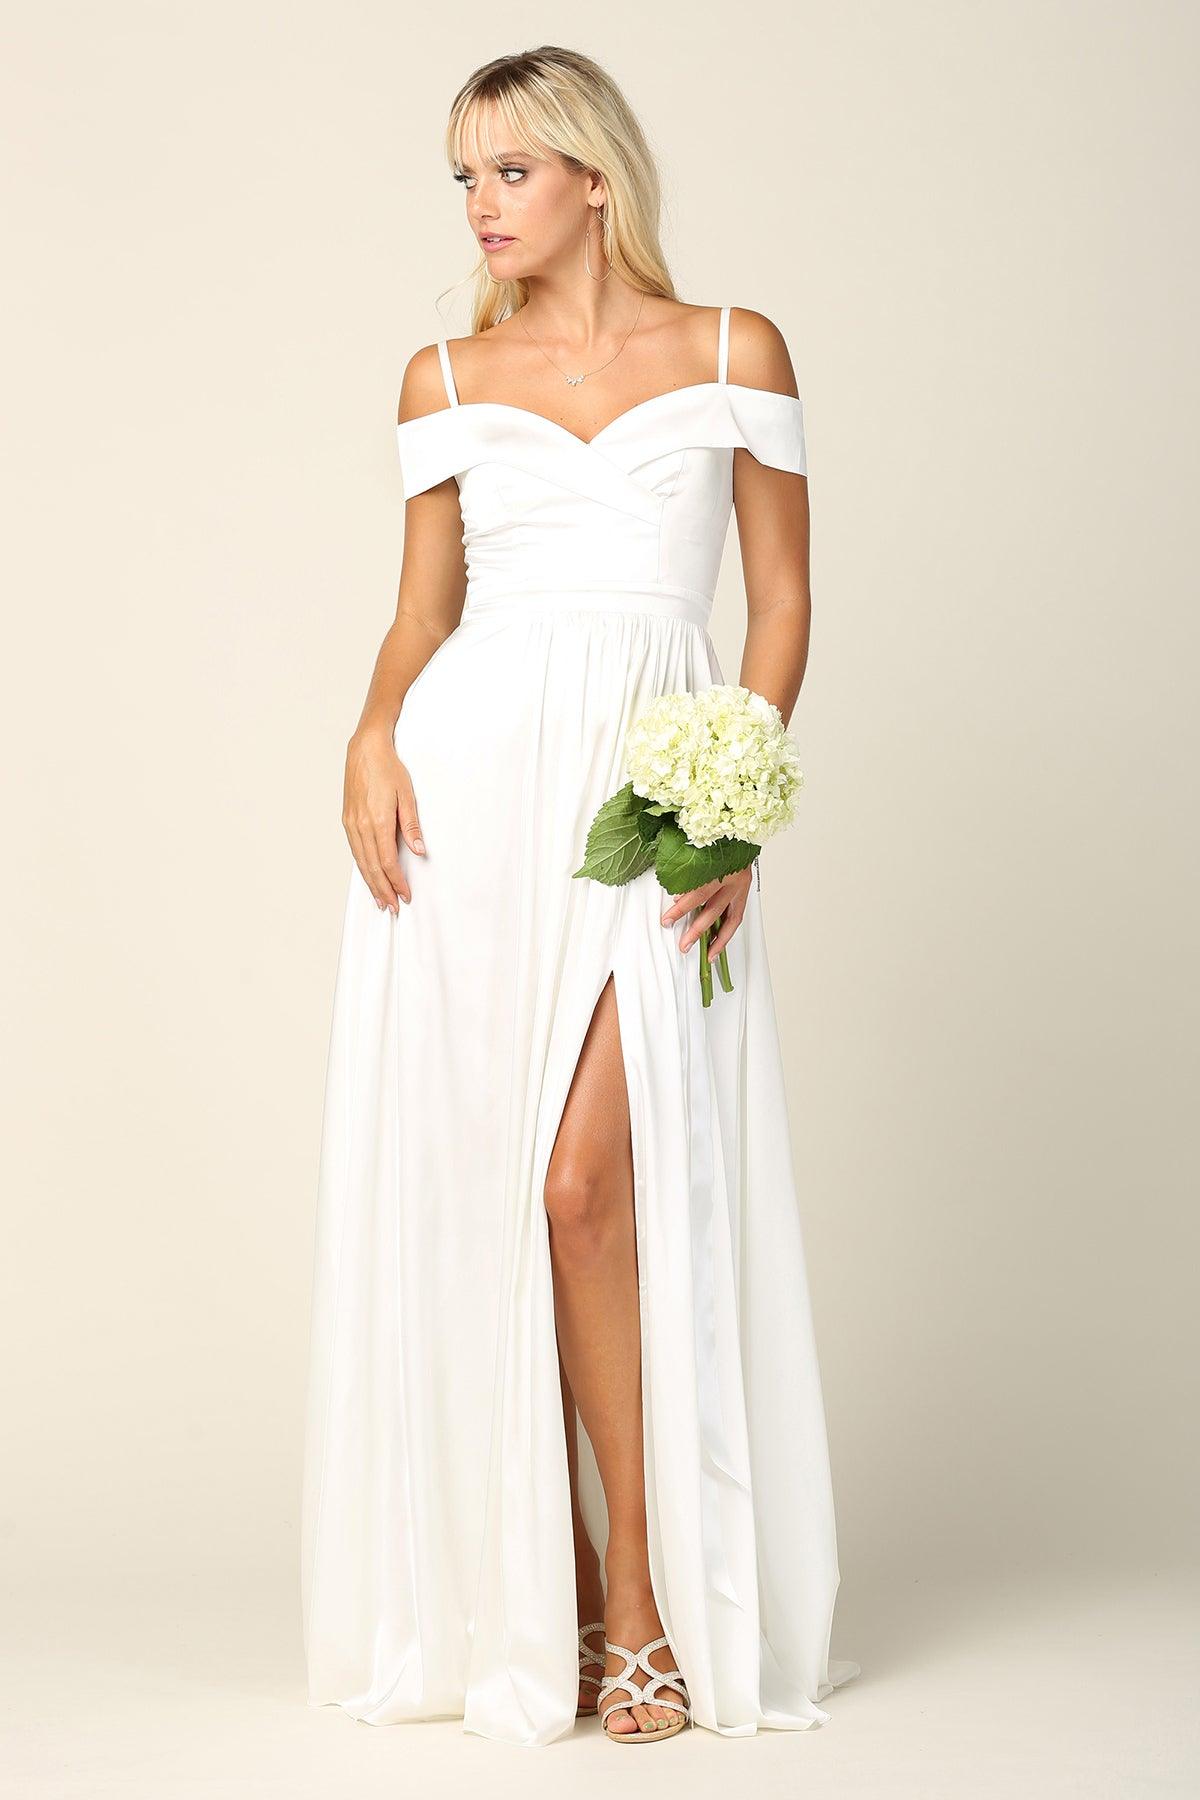 Long Formal Off Shoulder Bridesmaid Dress - The Dress Outlet